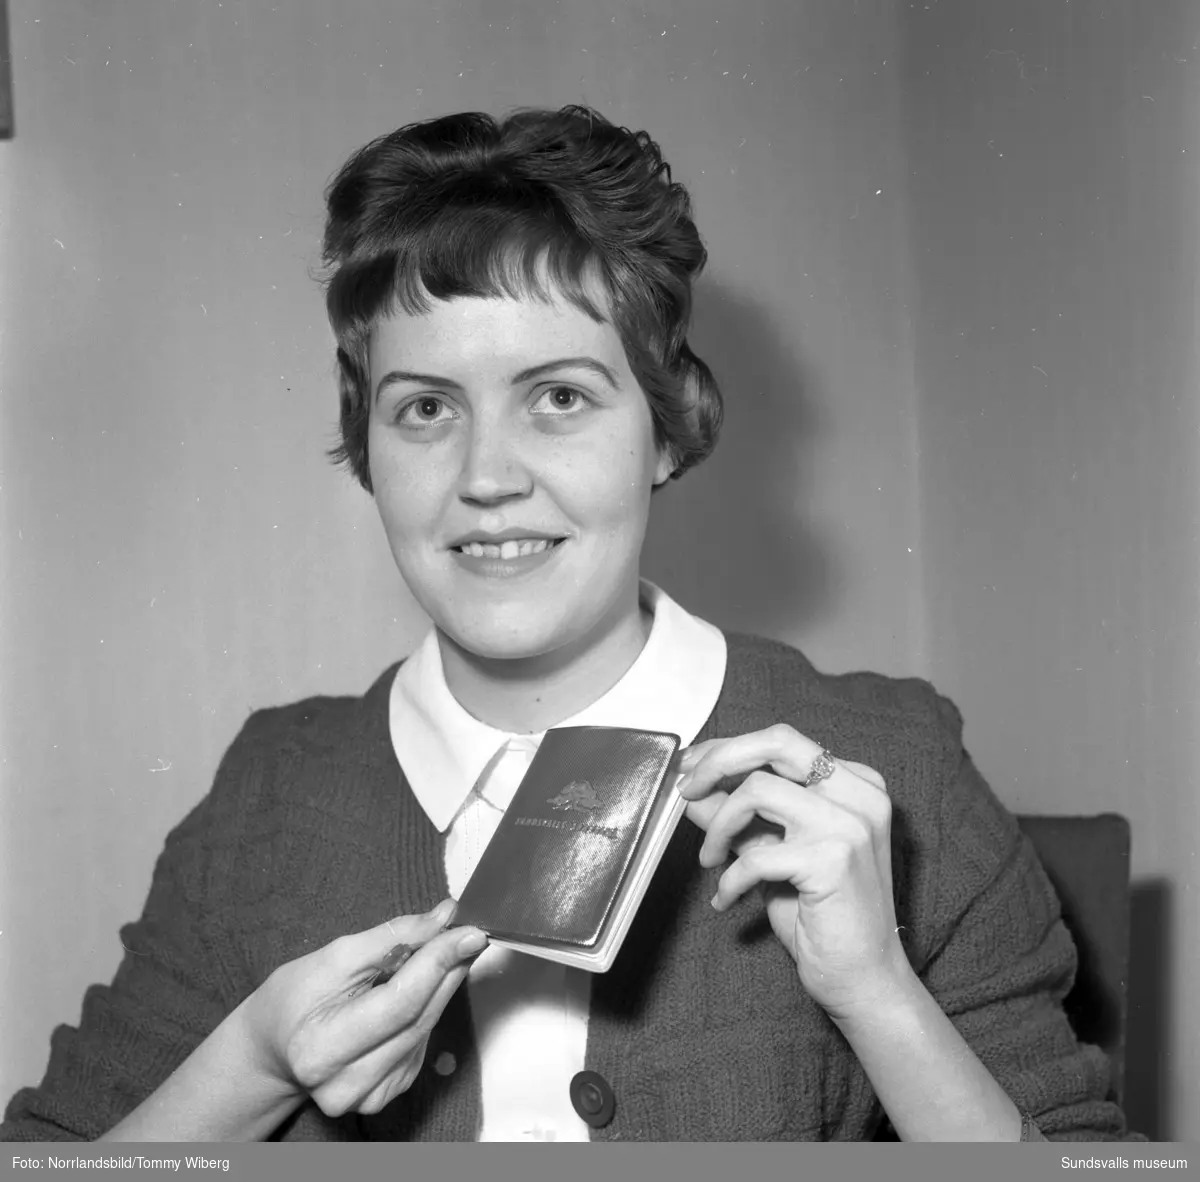 Under sparbanksveckan 1960 presenterade Sparbanken sin nyhet Guldboken, en bankbok tänkt som ett anternativ till presentkort eller kontanter vid bemärkelsedagar eller andra högtidliga tillfällen.